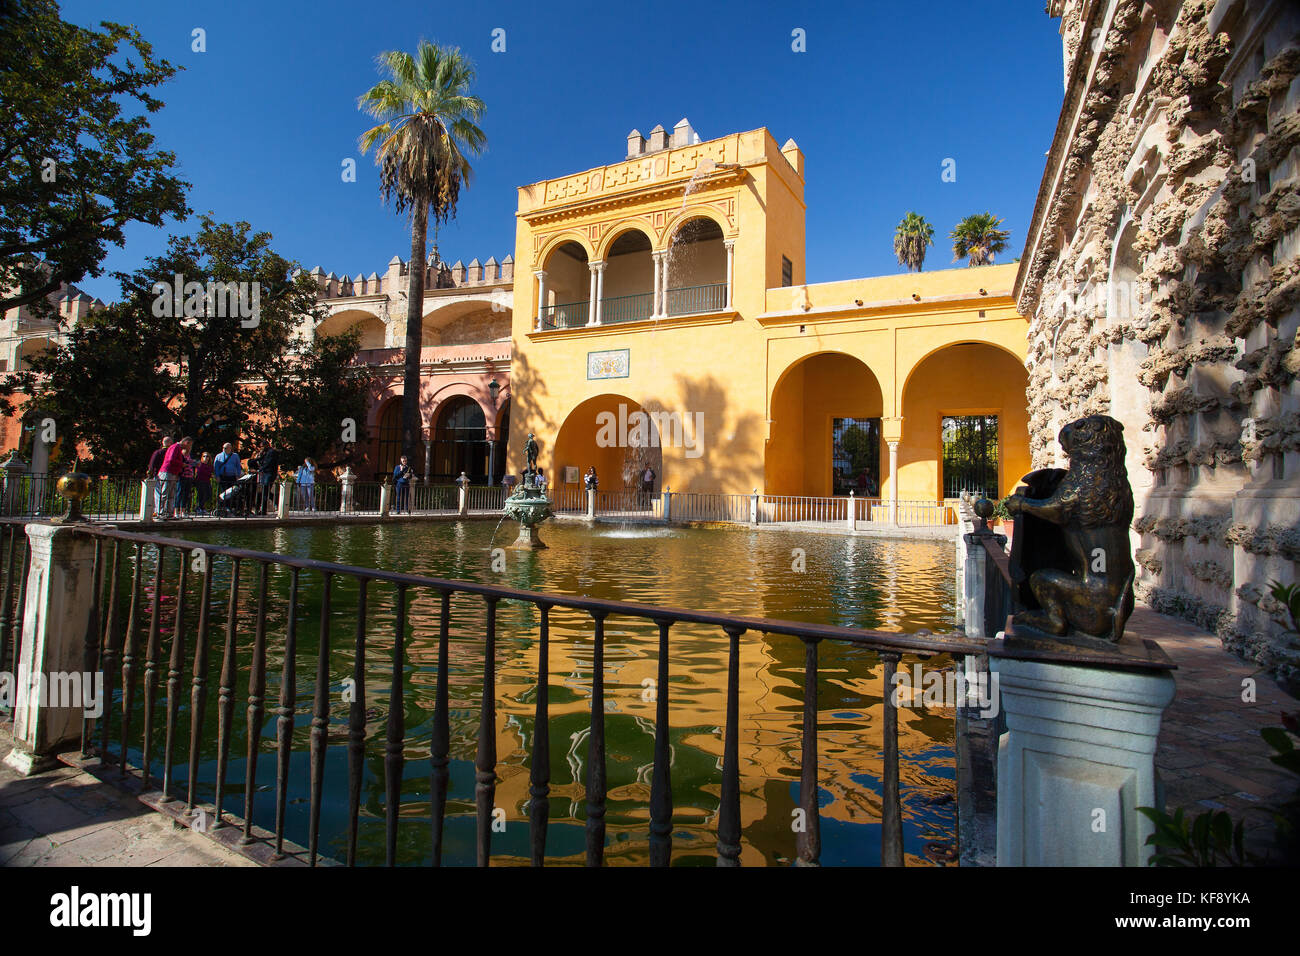 Séville, Espagne - novembre 18,2016 : Alcazar de Séville dans les jardins.l'Alcazar de Séville est un palais royal à Séville, Espagne, initialement développé par Banque D'Images